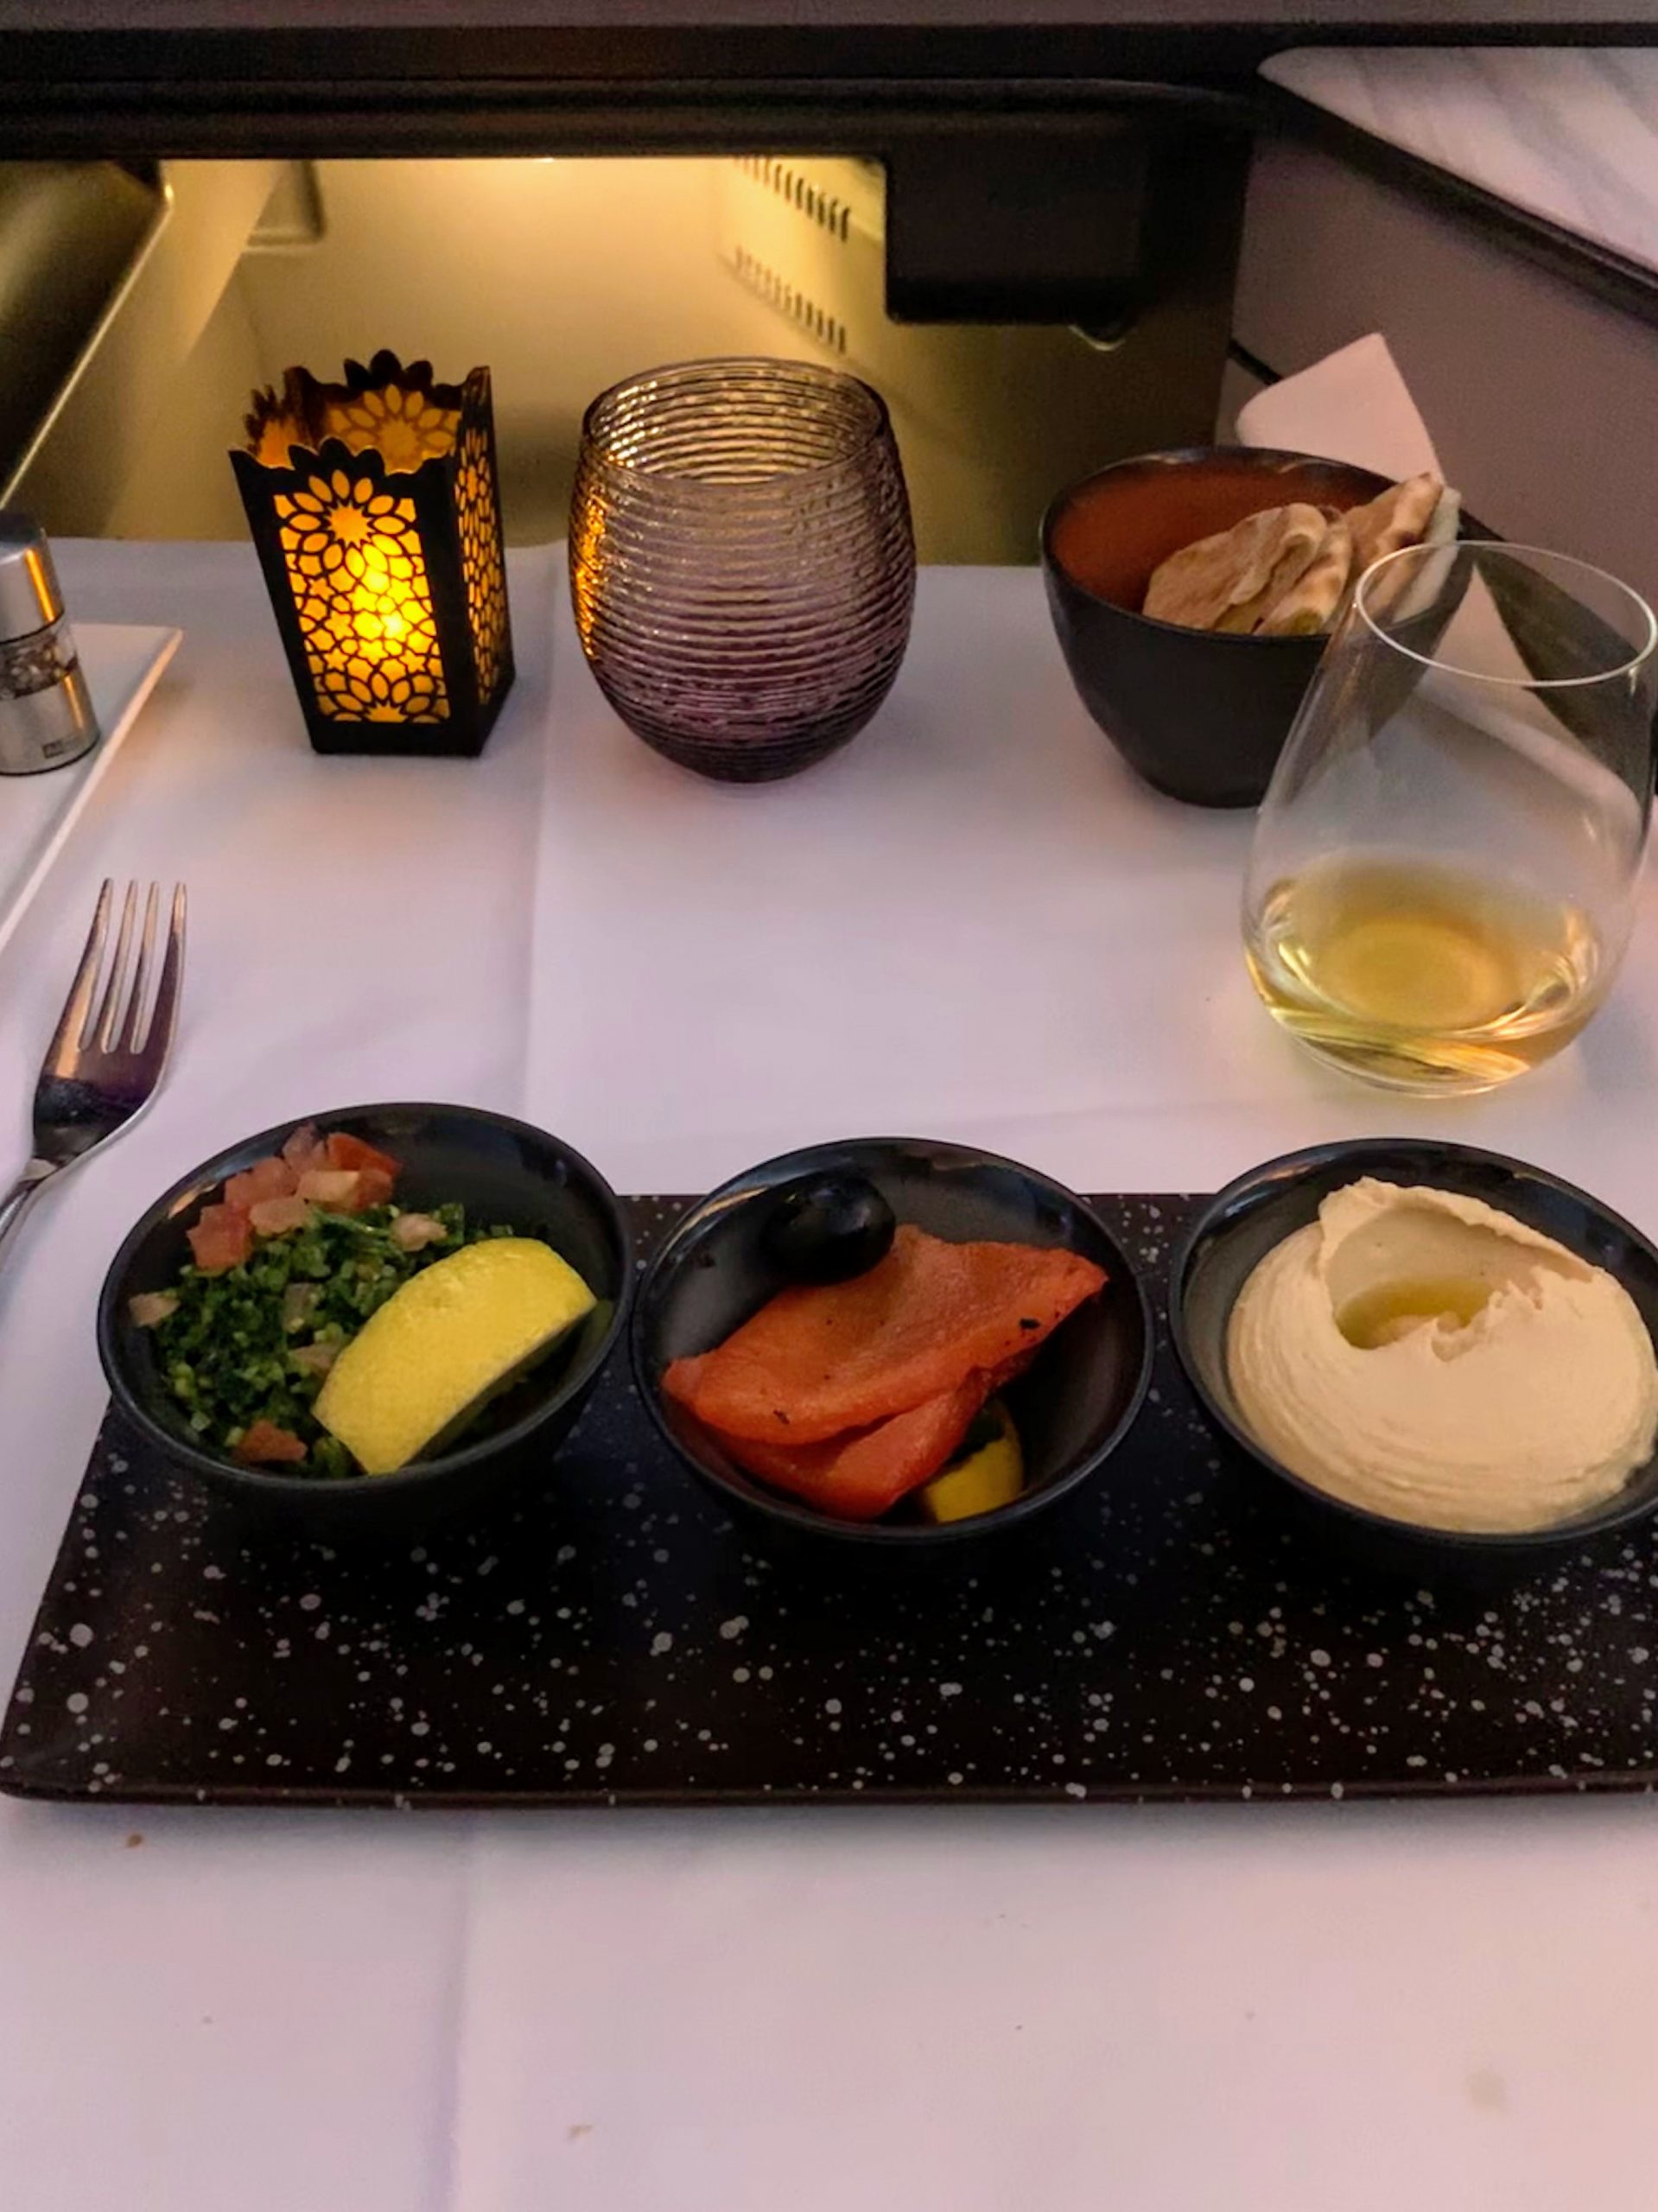 Food Qatar Airways